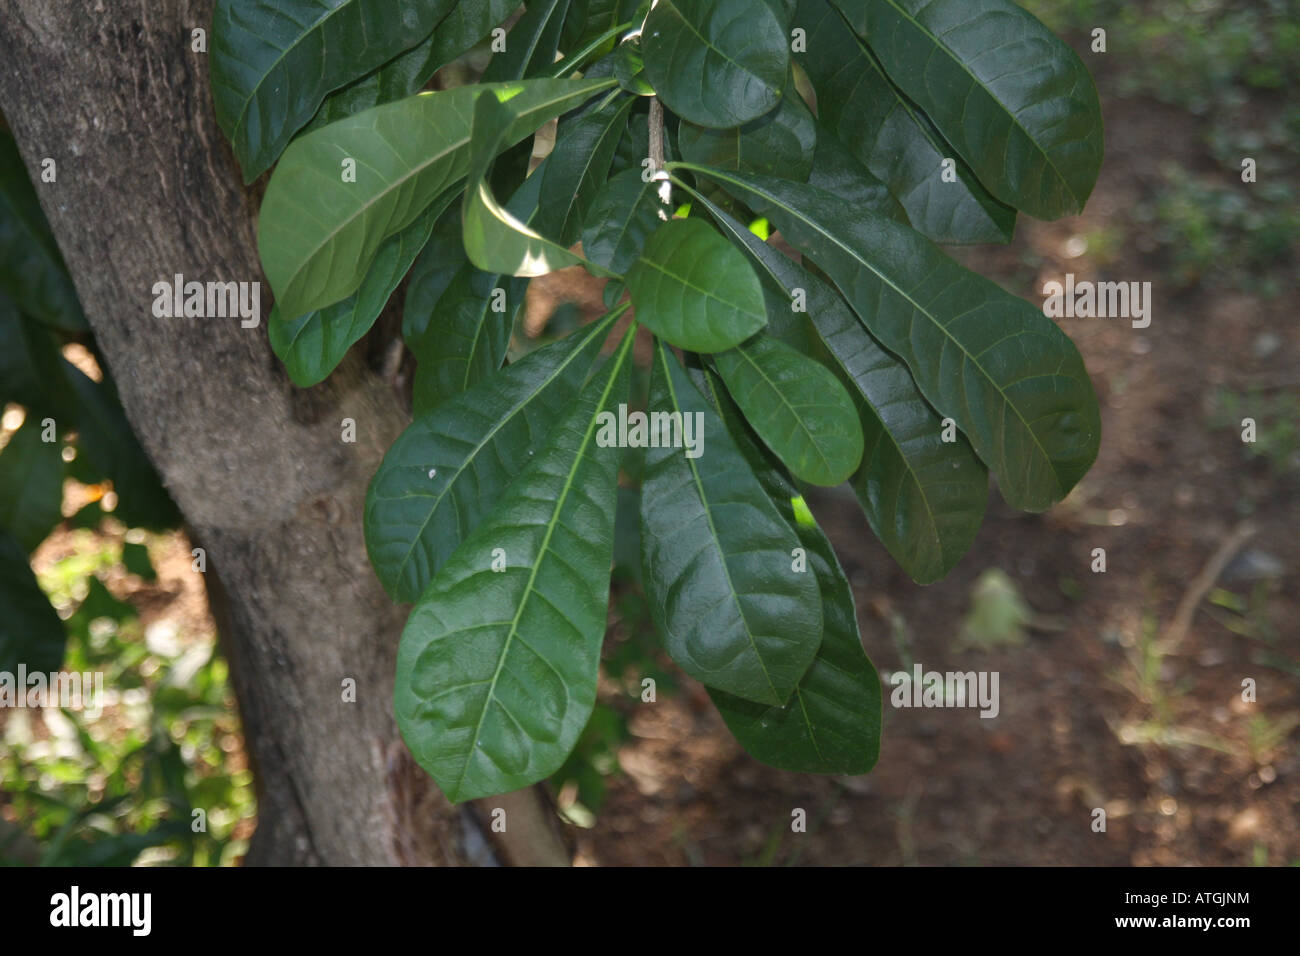 ceylon Oak schleichera oleosa Sri Lanka Stock Photo